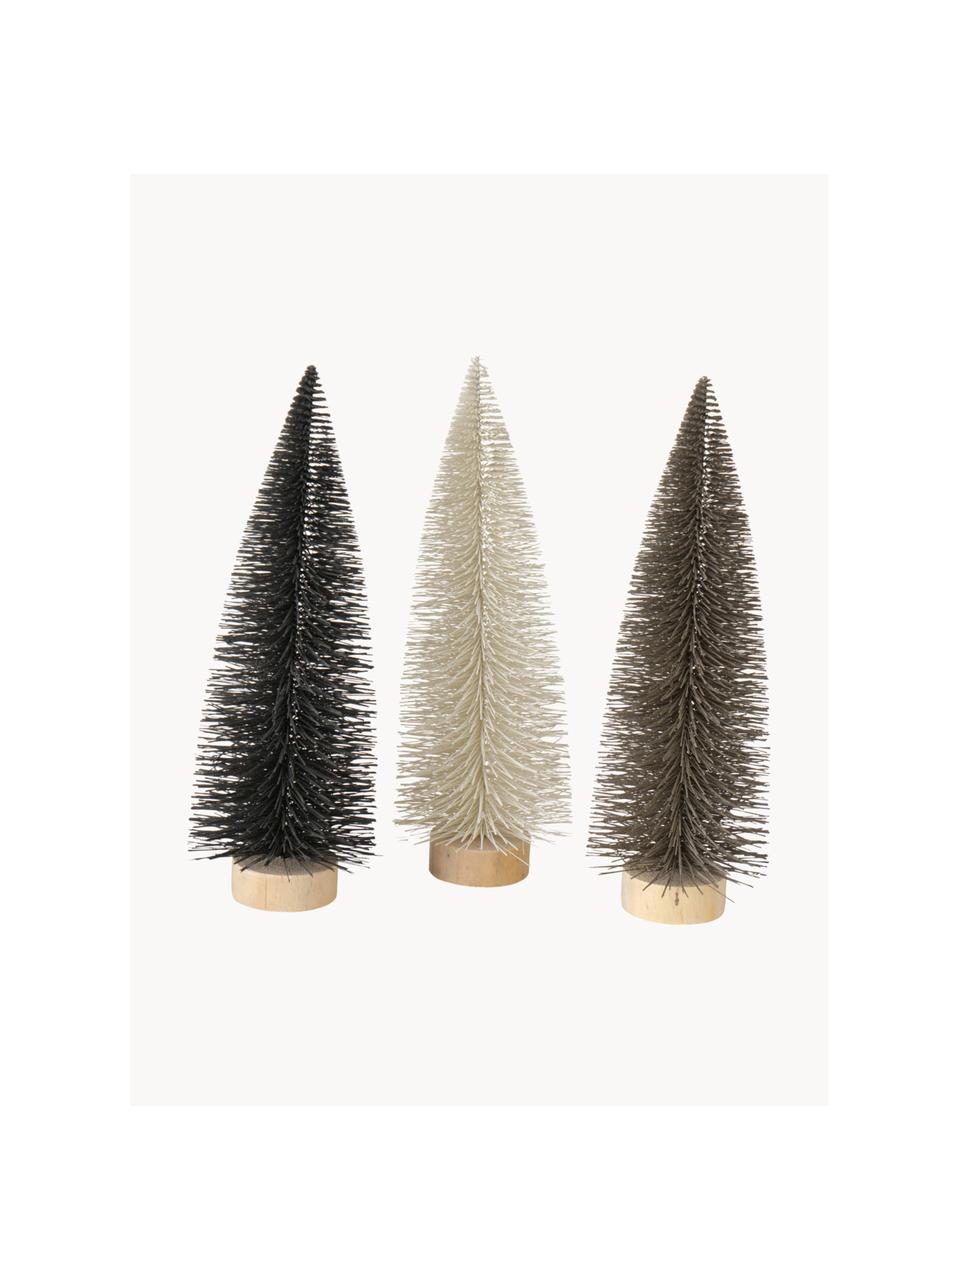 Sada dekorativních stromečků Tarvo, 3 díly, Černá, greige, bílá, Ø 14 cm, V 41 cm